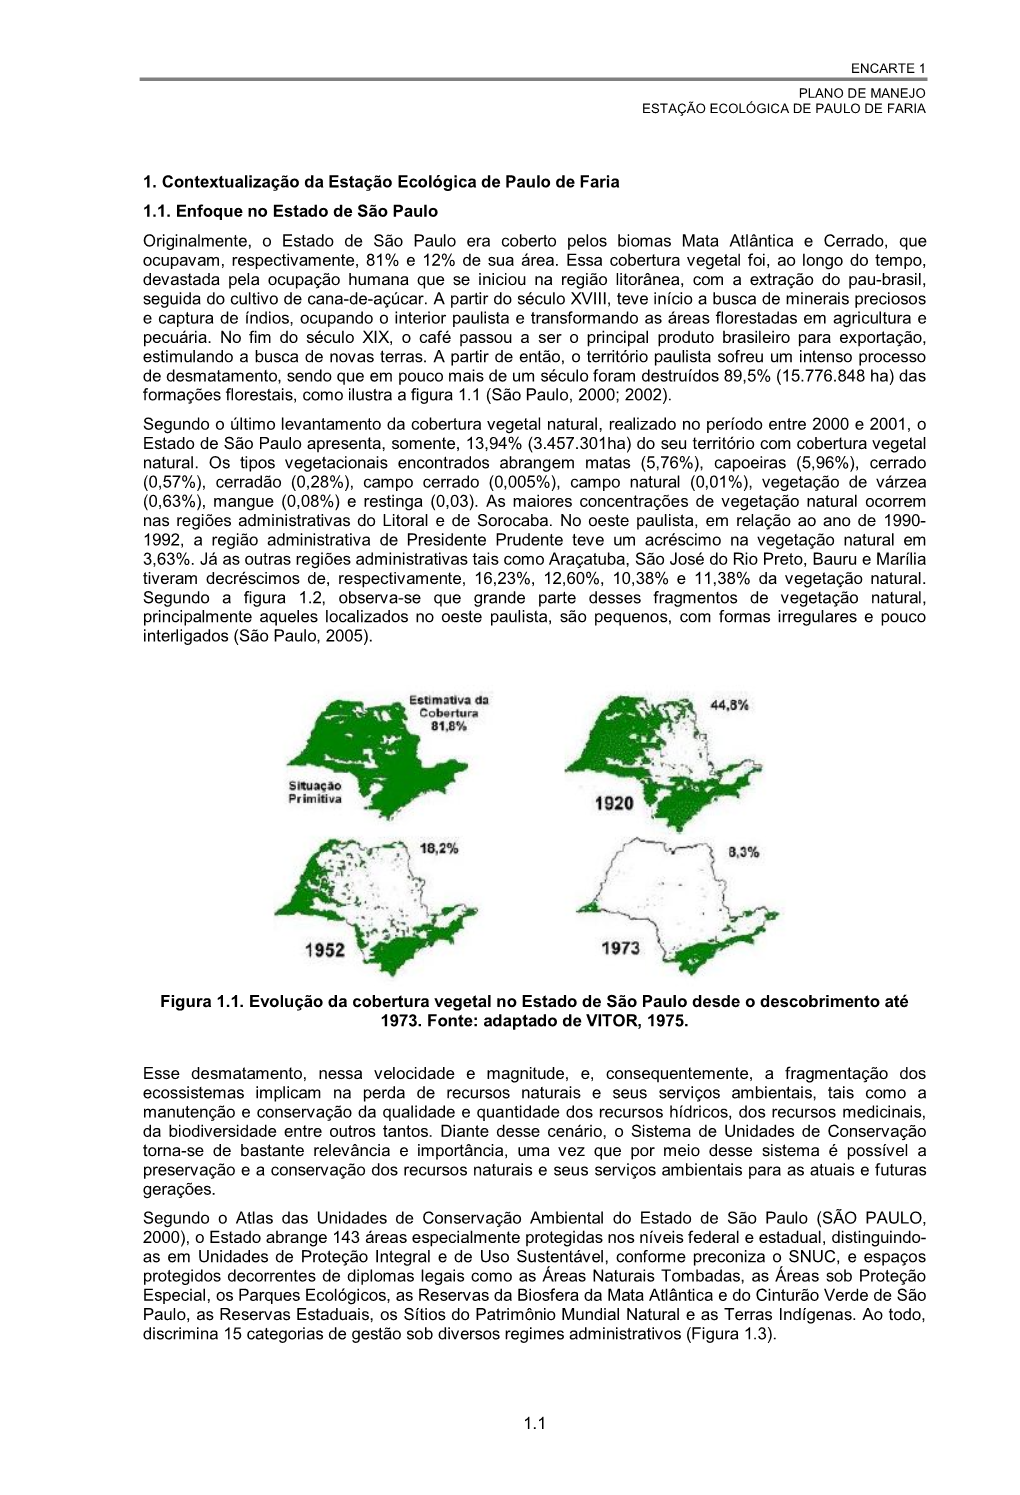 1.1 1. Contextualização Da Estação Ecológica De Paulo De Faria 1.1. Enfoque No Estado De São Paulo Originalmente, O Estado